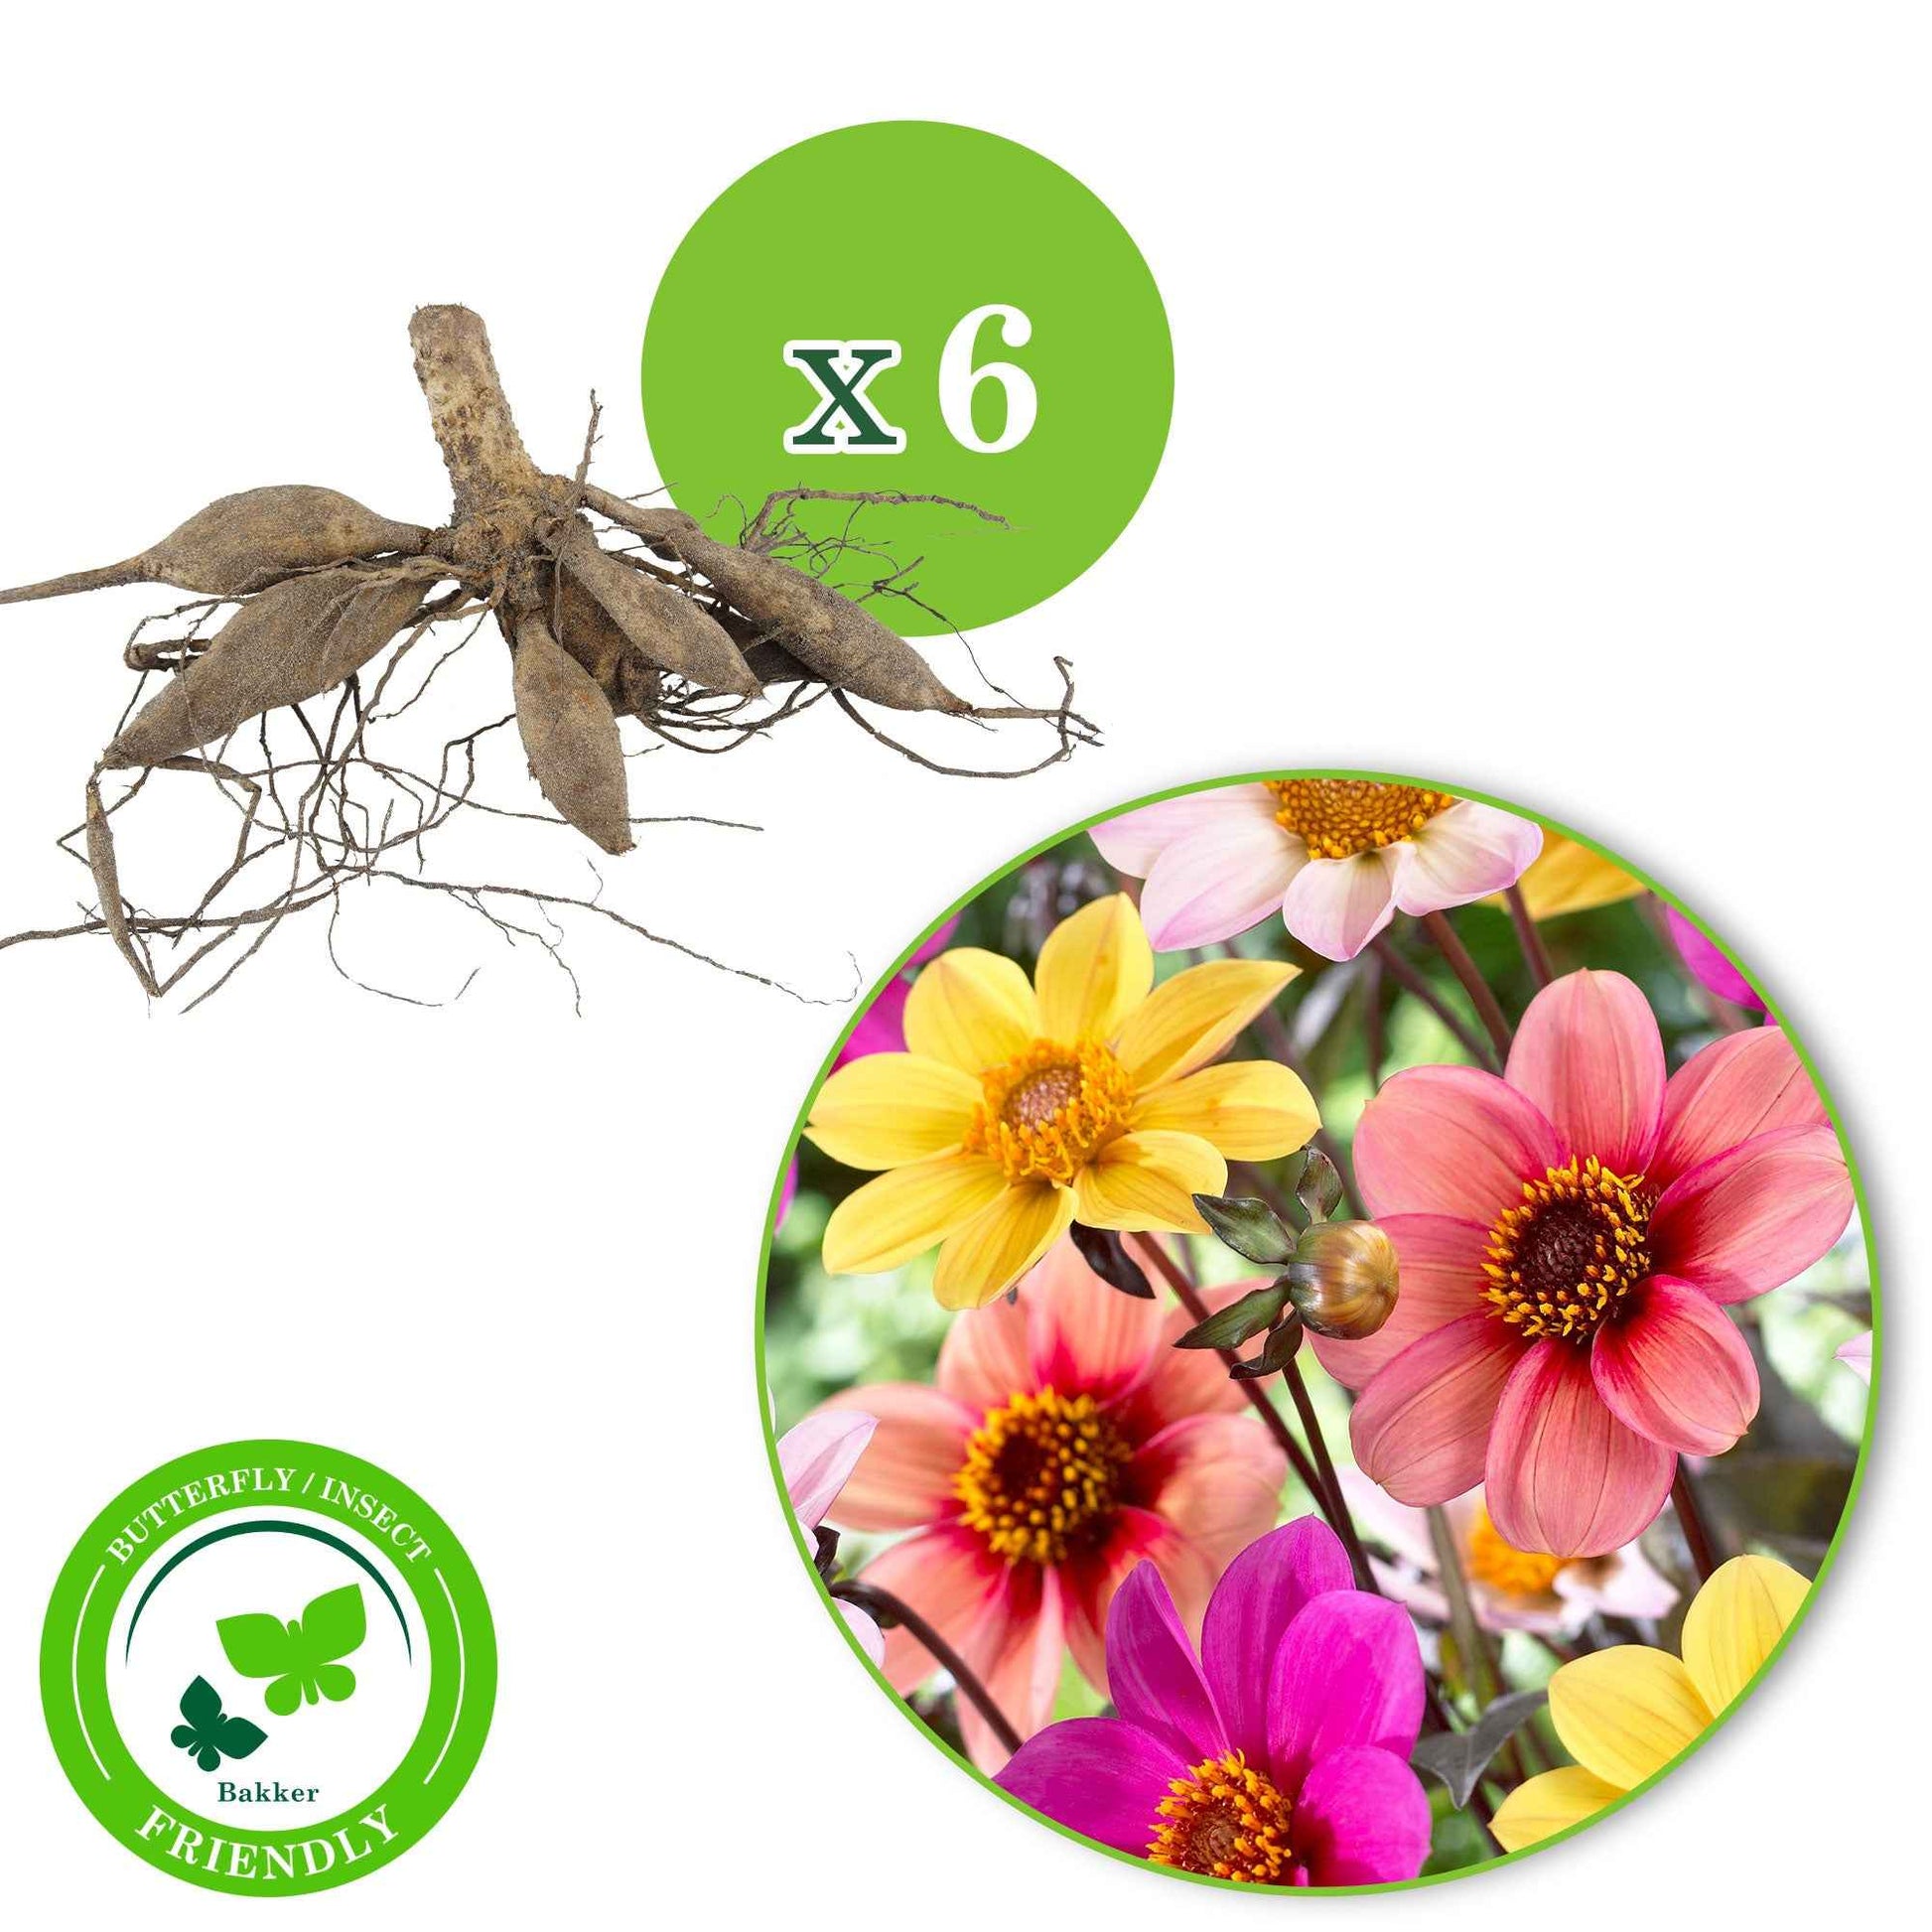 6x Dahlia mignon - Mélange 'HS Butterfly' - Bulbes de fleurs populaires